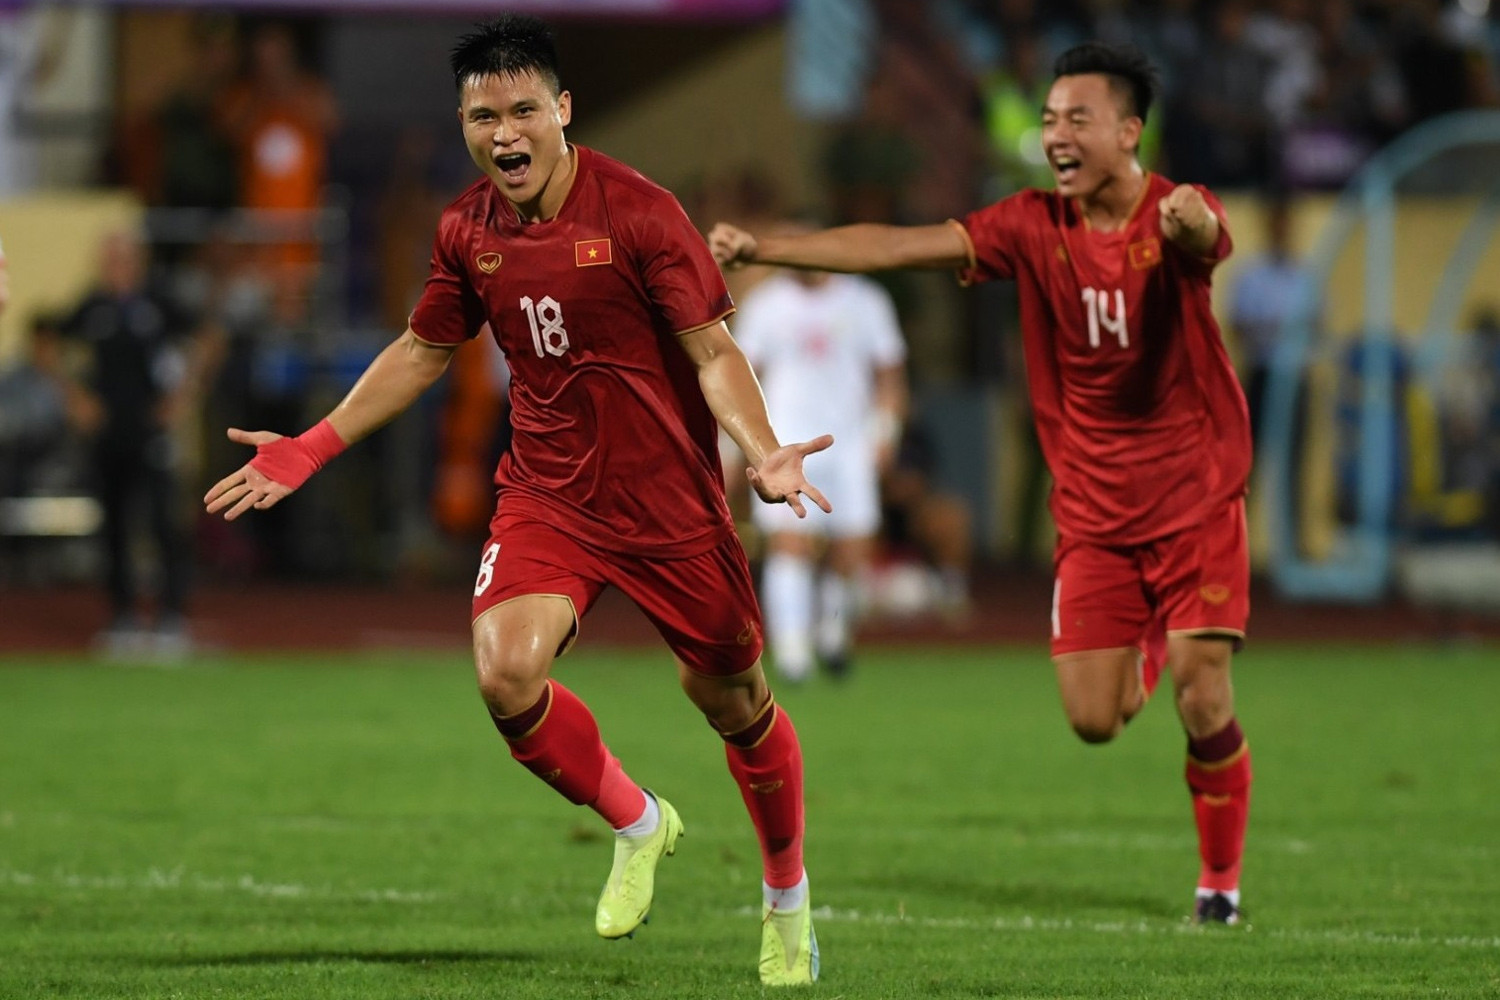 Tuyển Việt Nam có lợi thế lớn ở vòng loại World Cup 2026